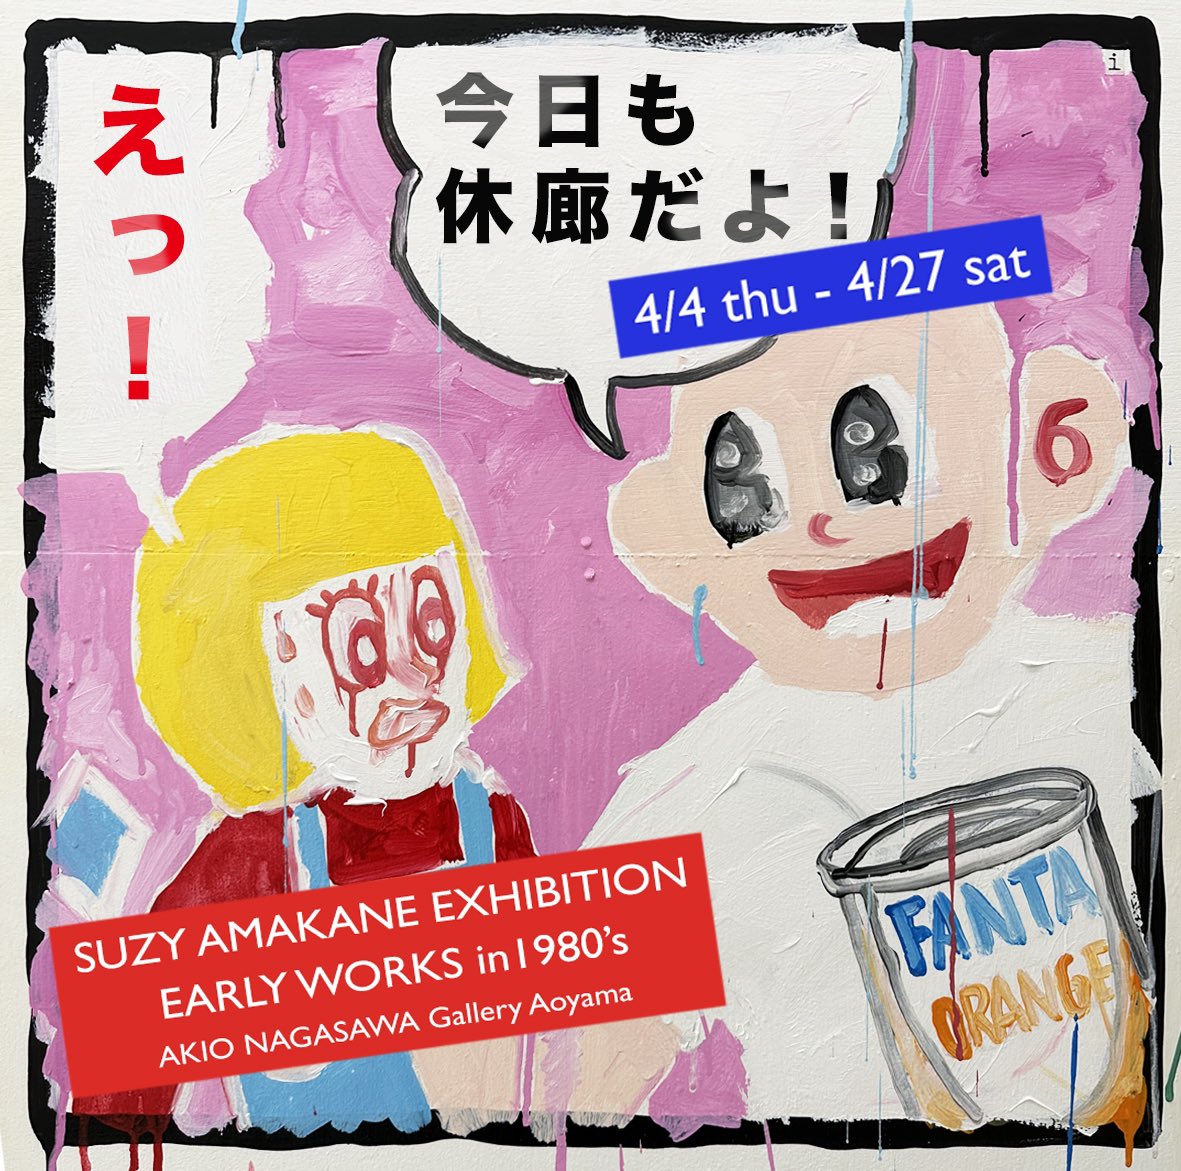 ハッピー♪プライス♪パラダイス♪ ⚠️要注意⚠️今日17日も休廊だよ スージー甘金展🌞 「EARLY WORKS in 1980’s」 Akio Nagasawa Gallery Aoyama x.gd/v7Bot